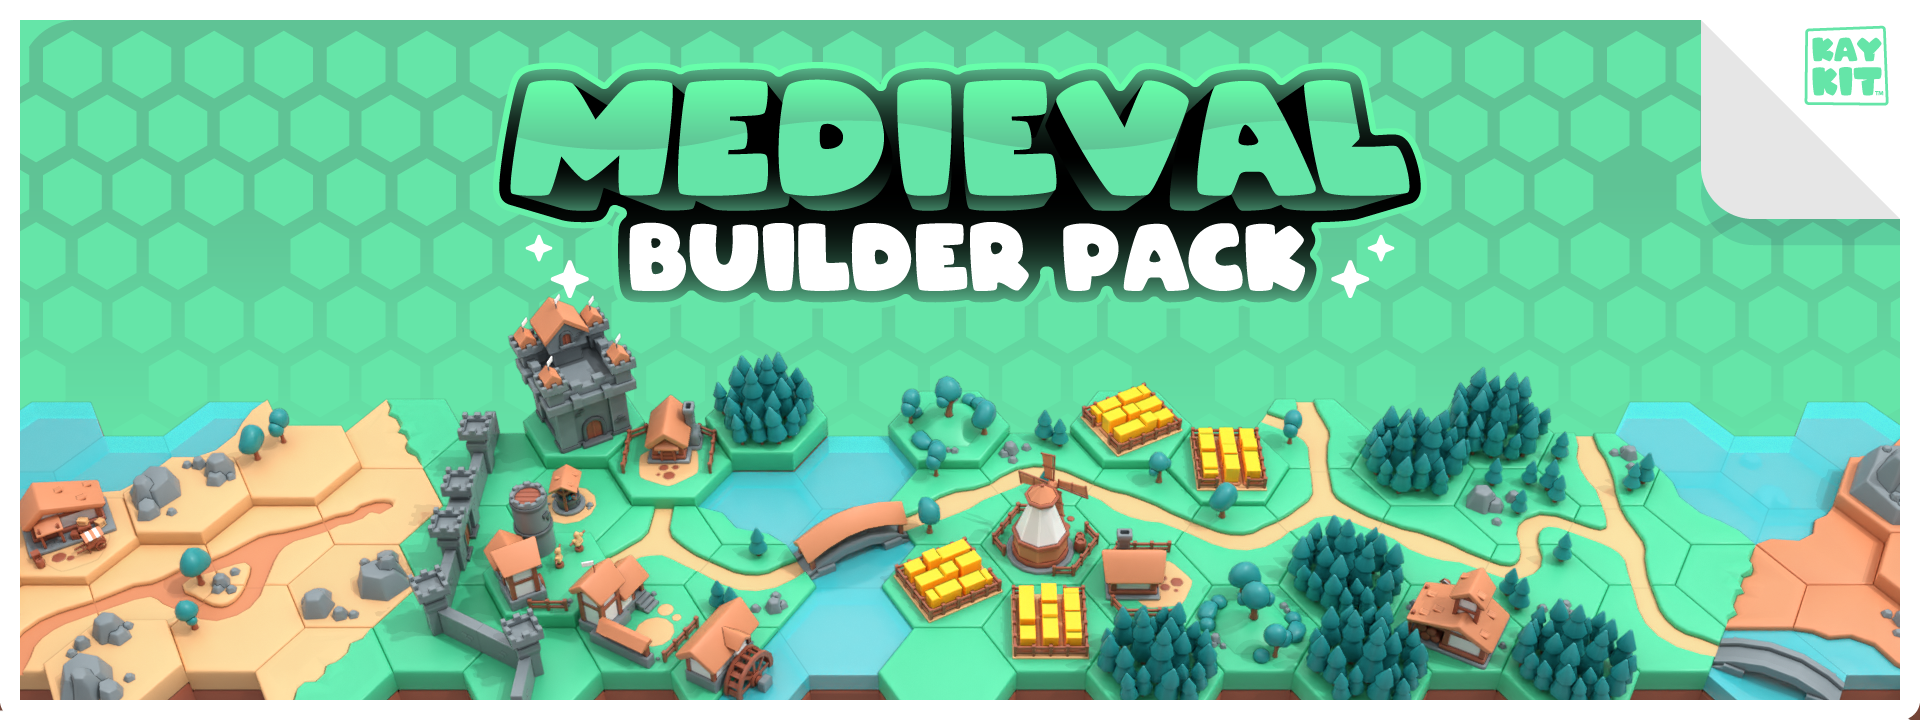 KayKit - Medieval Builder Pack